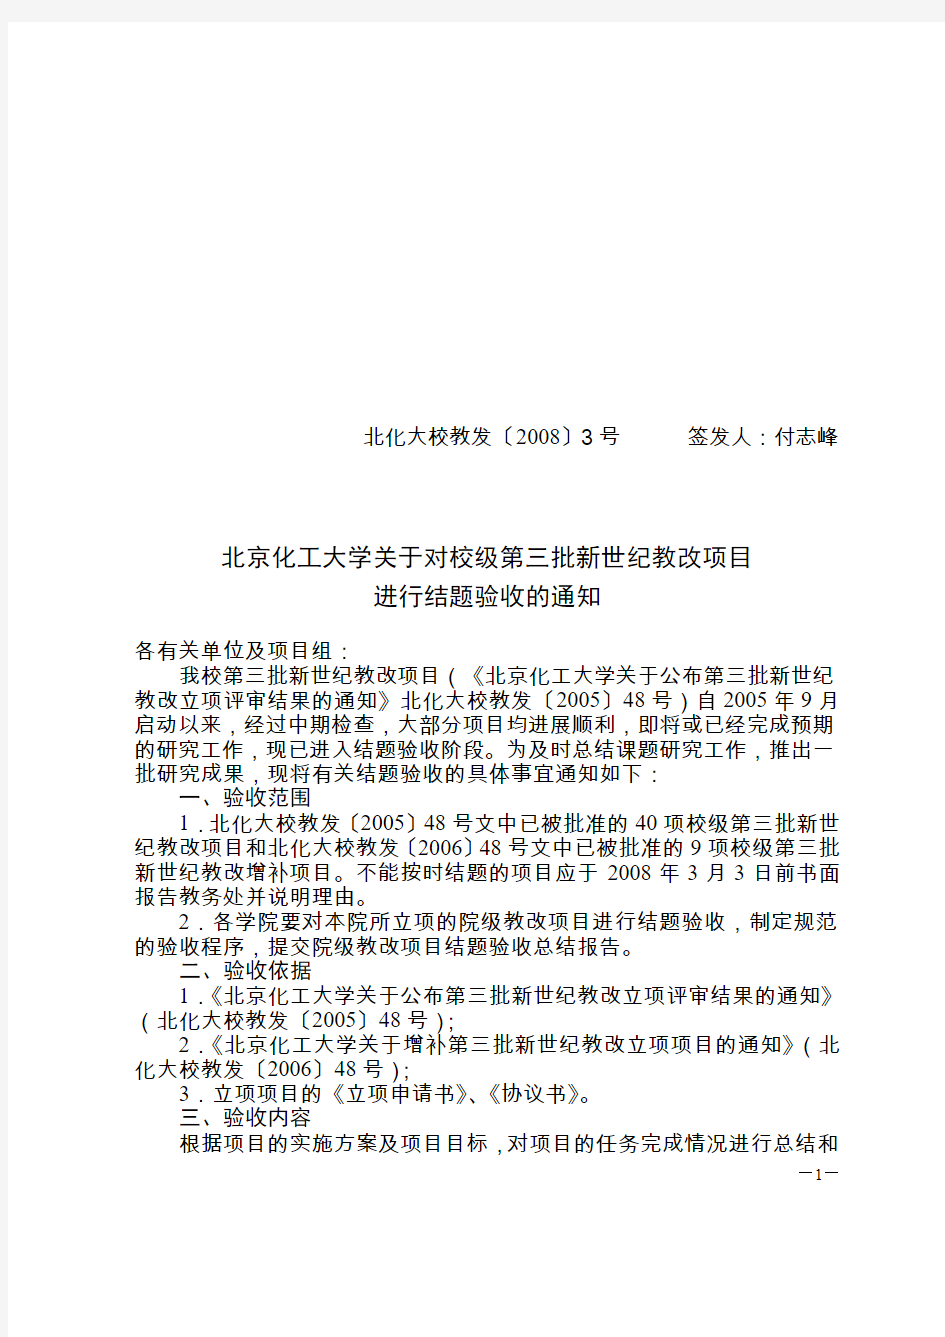 北京化工大学第三批新世纪教改立项项目结题验收表(精)